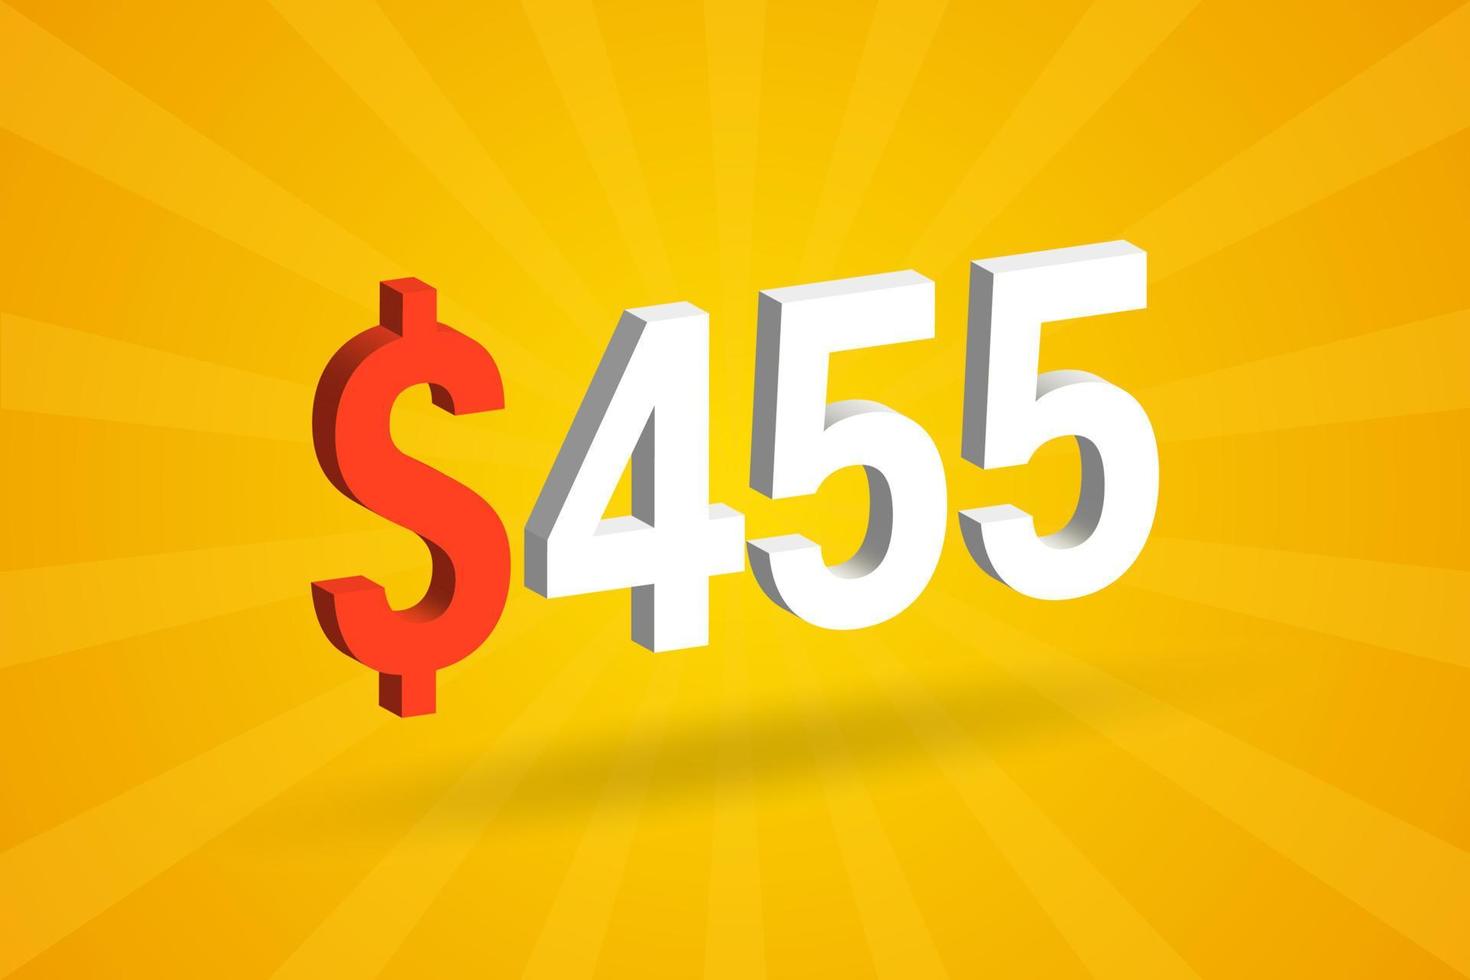 455 usd símbolo de texto 3d. 455 dólares do estado unido 3d com vetor de estoque de dinheiro americano de fundo amarelo